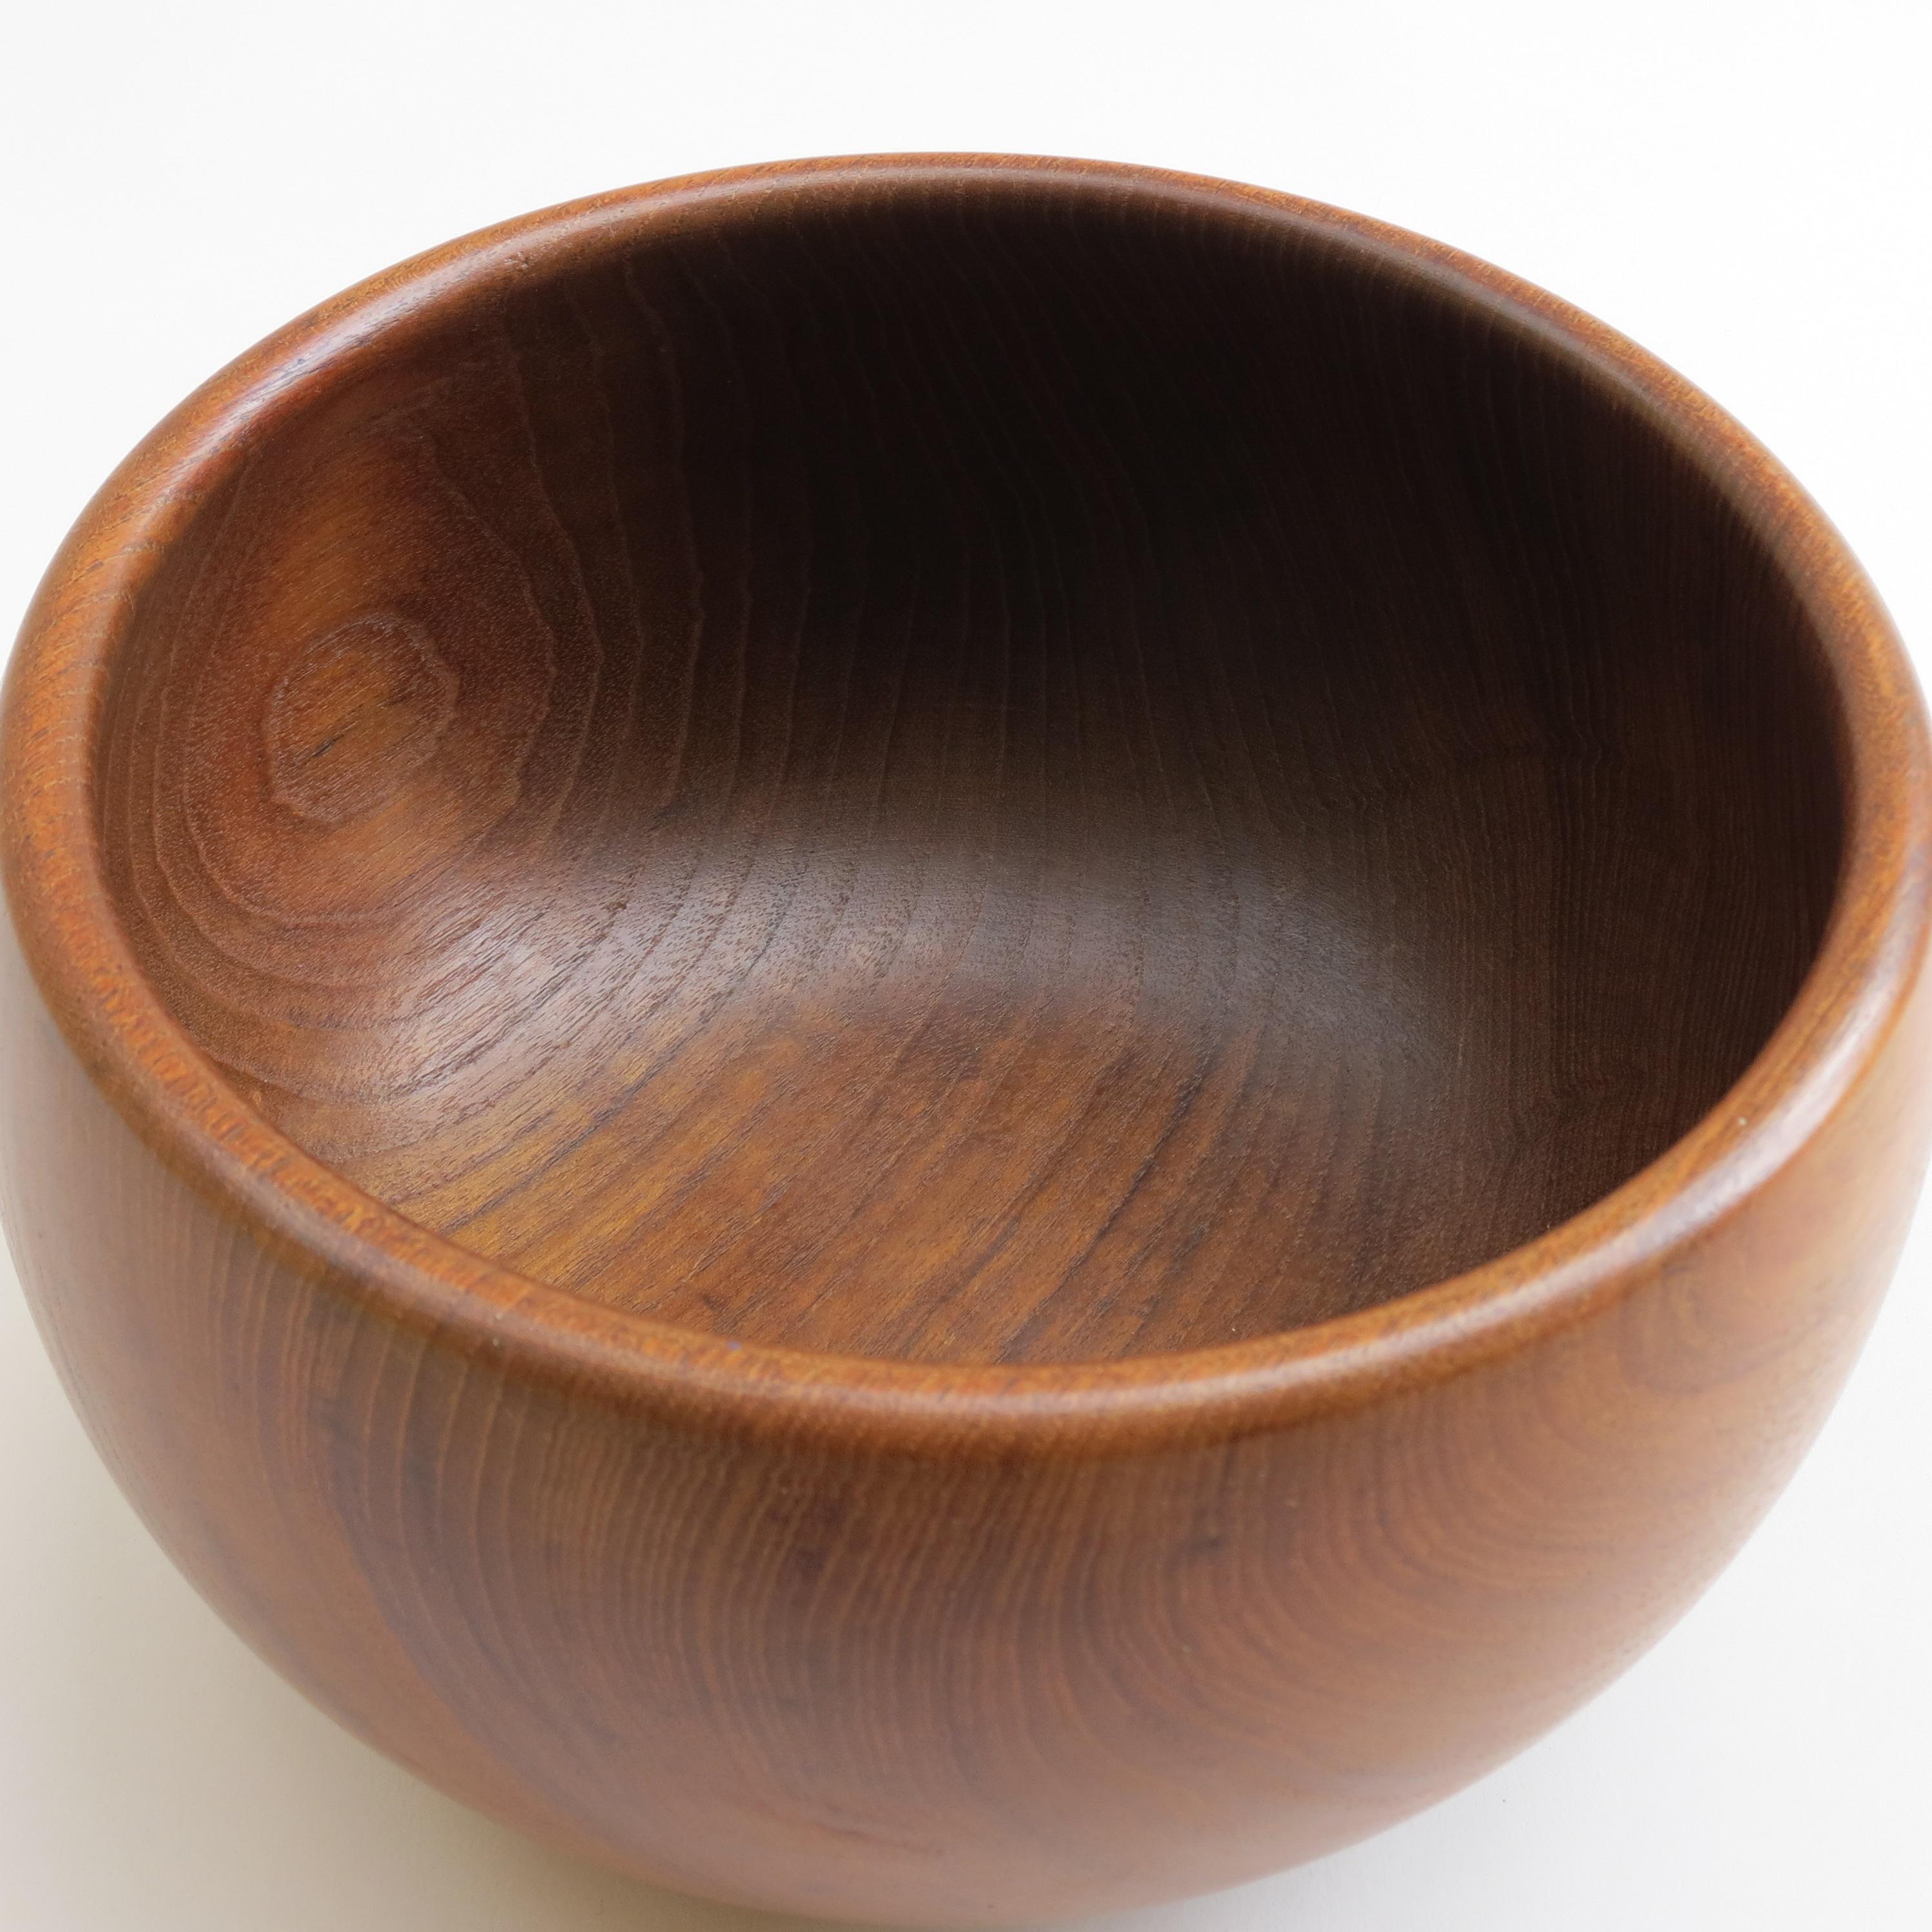 huge wooden bowl